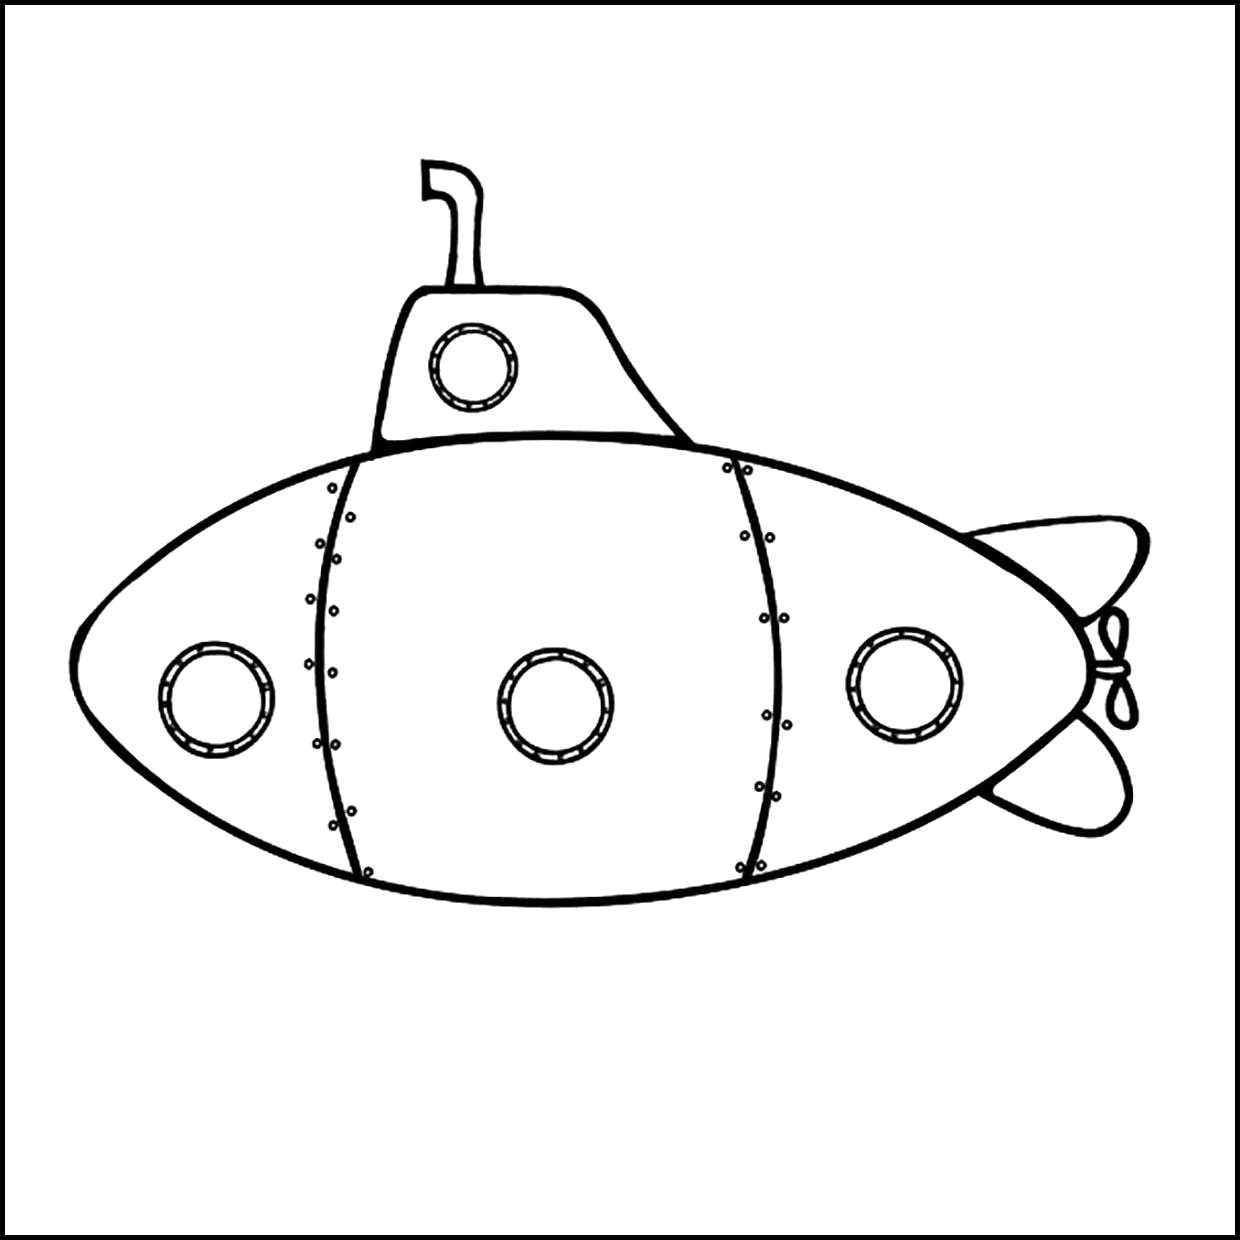 Раскраска  подводная лодка. Скачать 23 февраля.  Распечатать 23 февраля